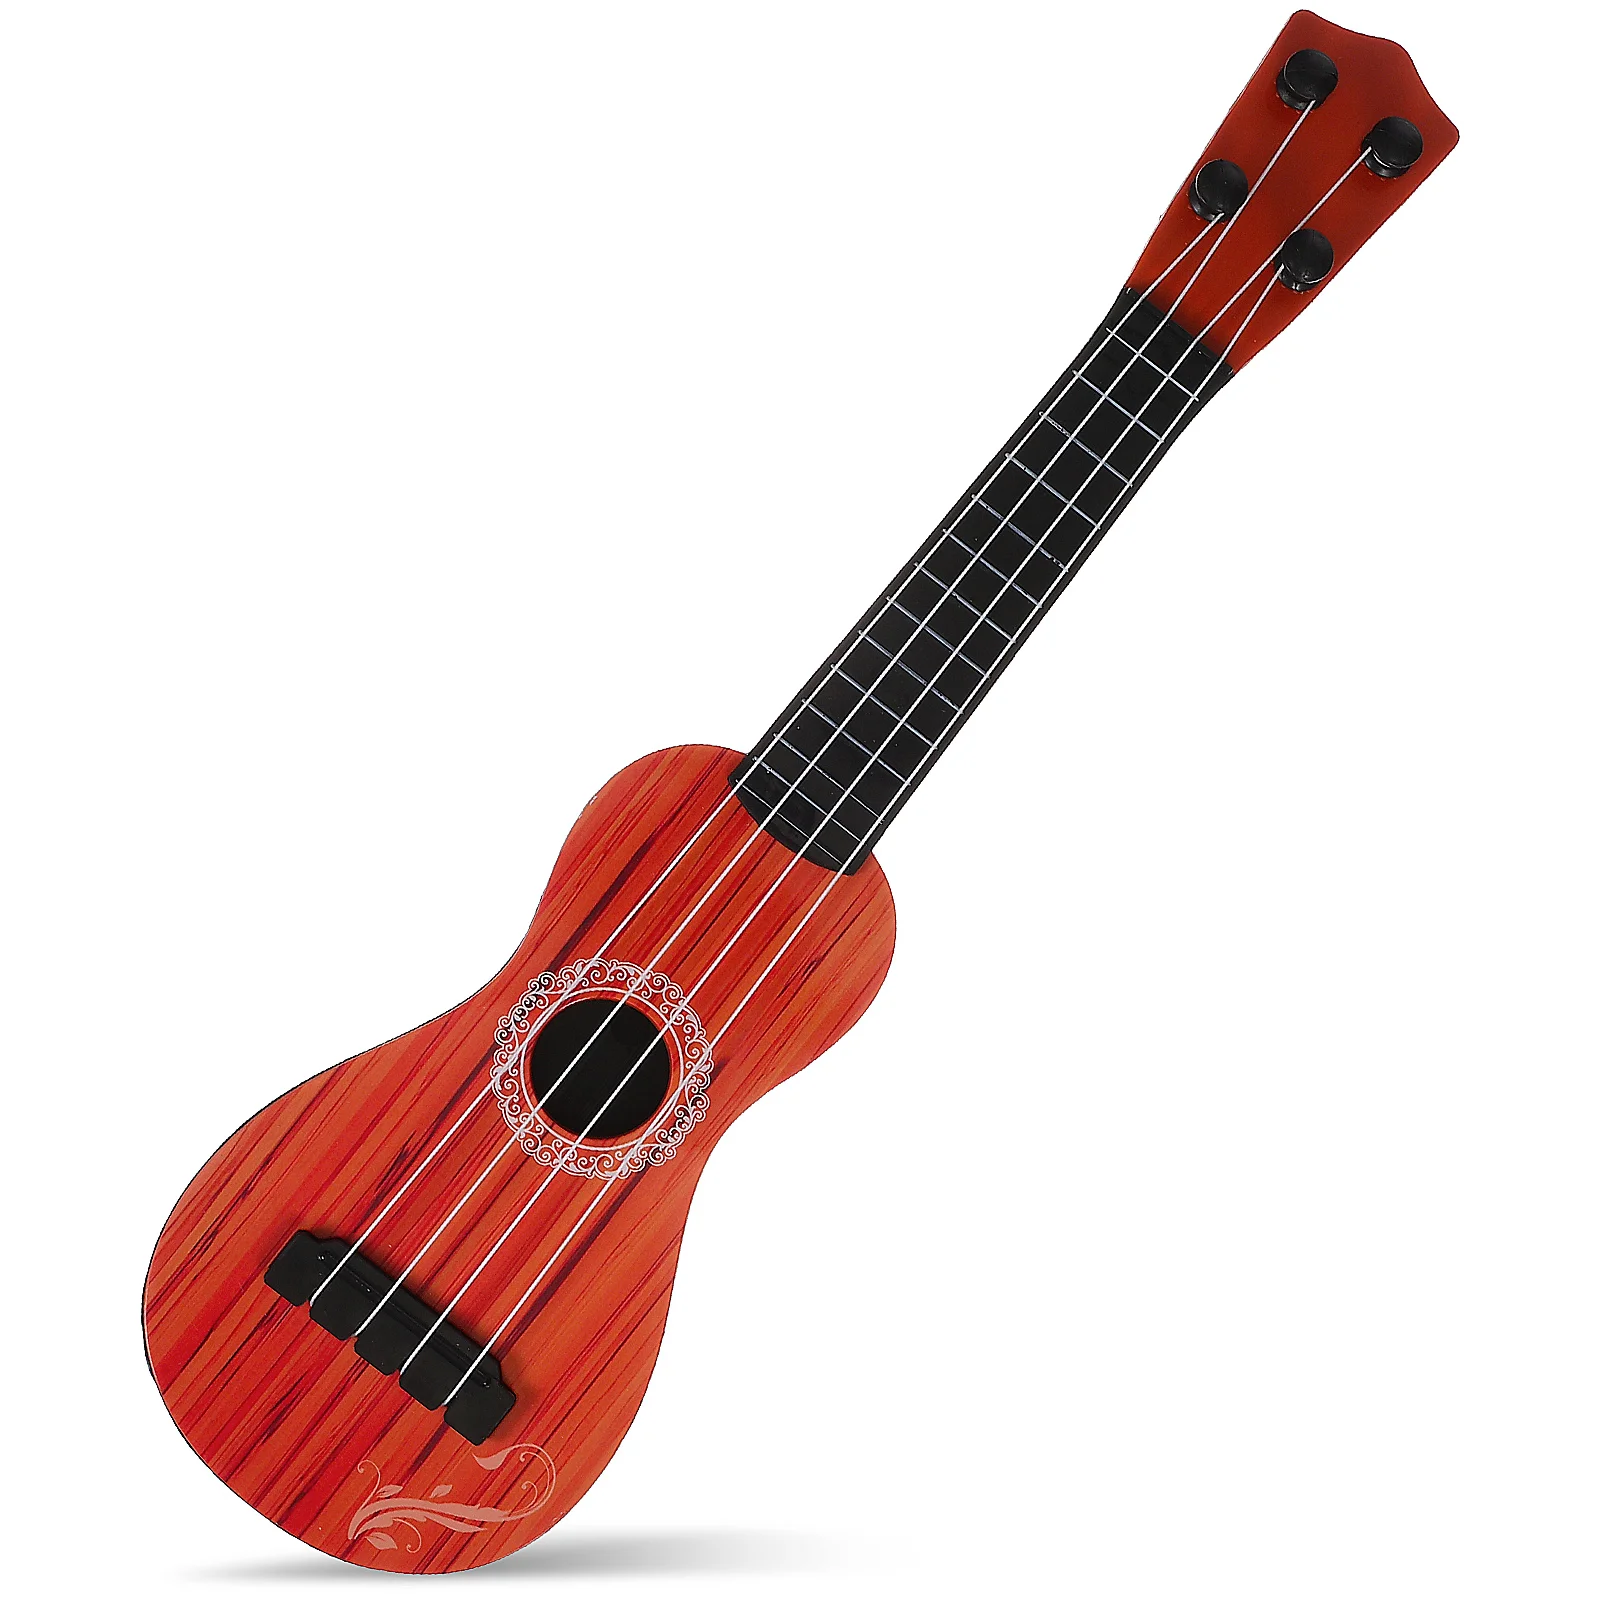 Гавайская гитара Музыкальный инструмент Гавайская гитара Акустическая Маленькая Гитара с древесным зерном Гавайская гитара с 4 струнами Для начинающих Подарок для детей 38 см 15 дюймов